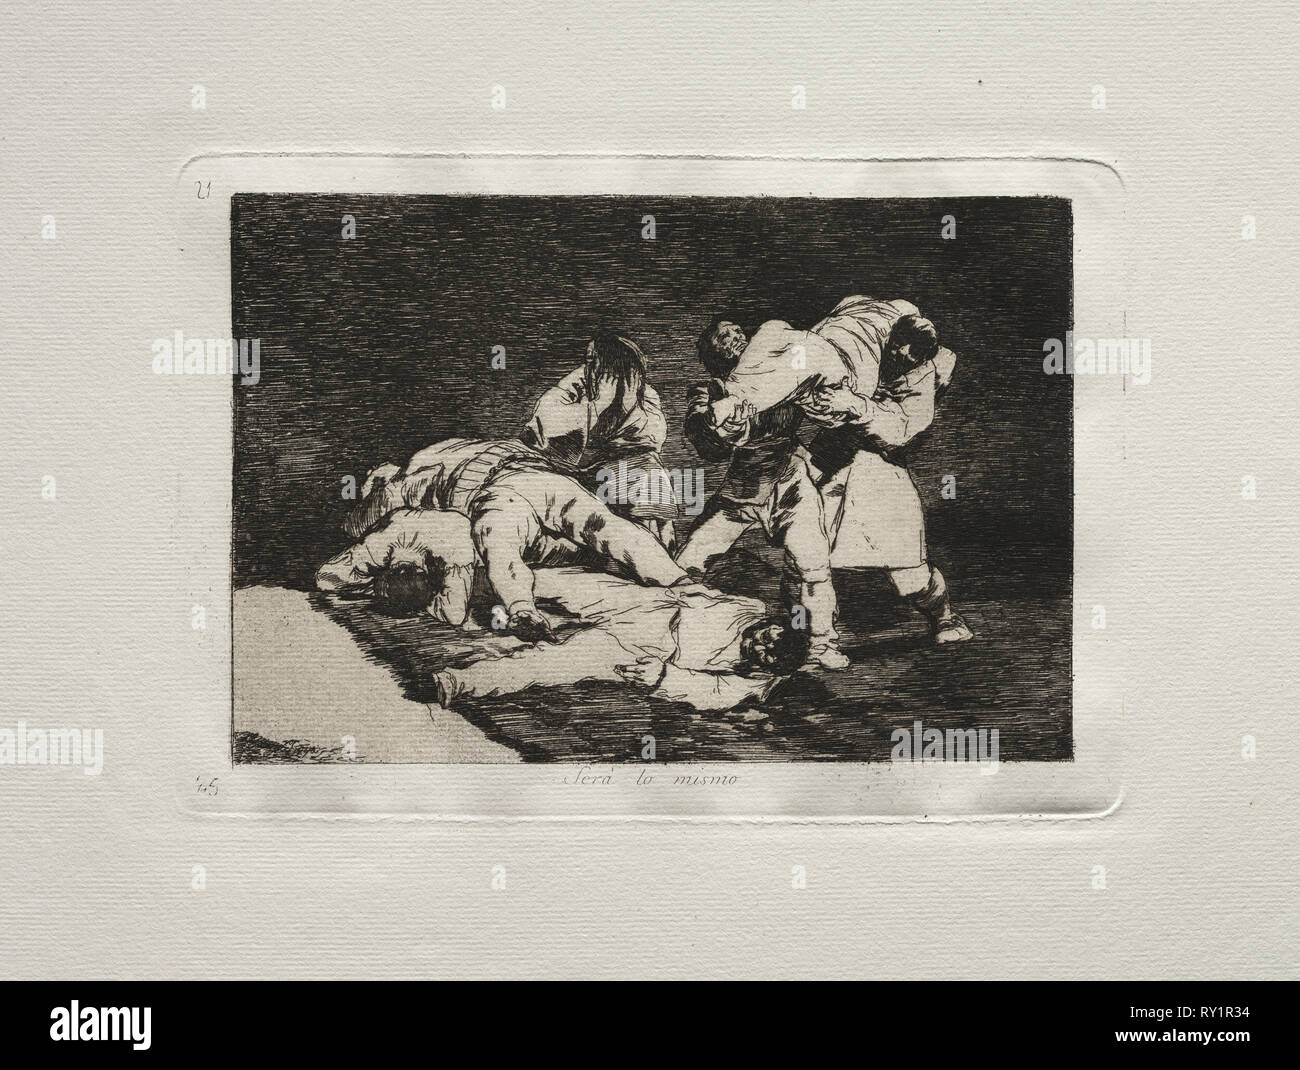 20: gli orrori della guerra: sarà lo stesso. Francisco de Goya (Spagnolo, 1746-1828). Attacco Foto Stock